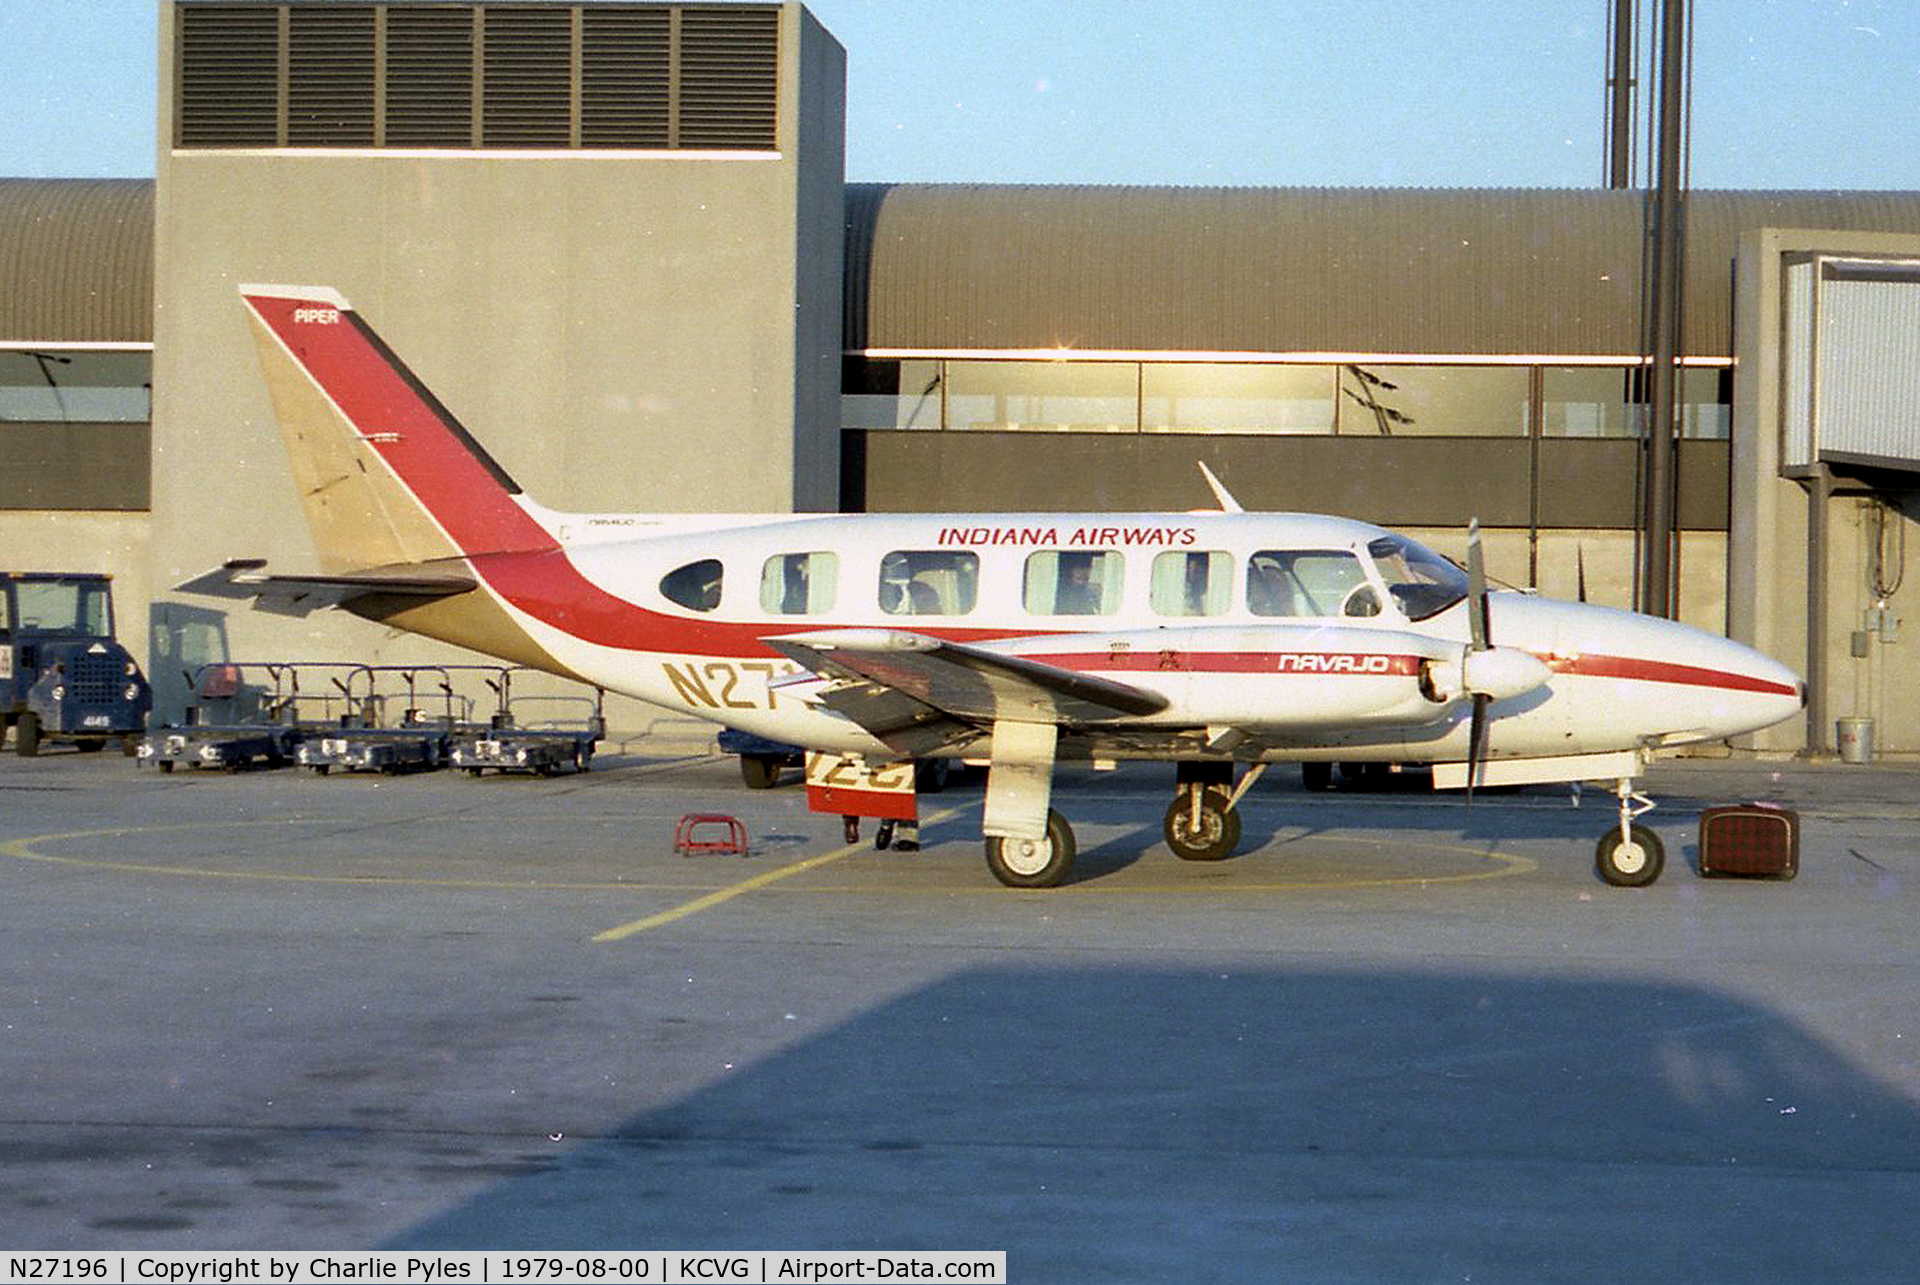 N27196, 1977 Piper PA-31-350 Chieftain C/N 31-7752095, Indiana Airways at CVG in 1979